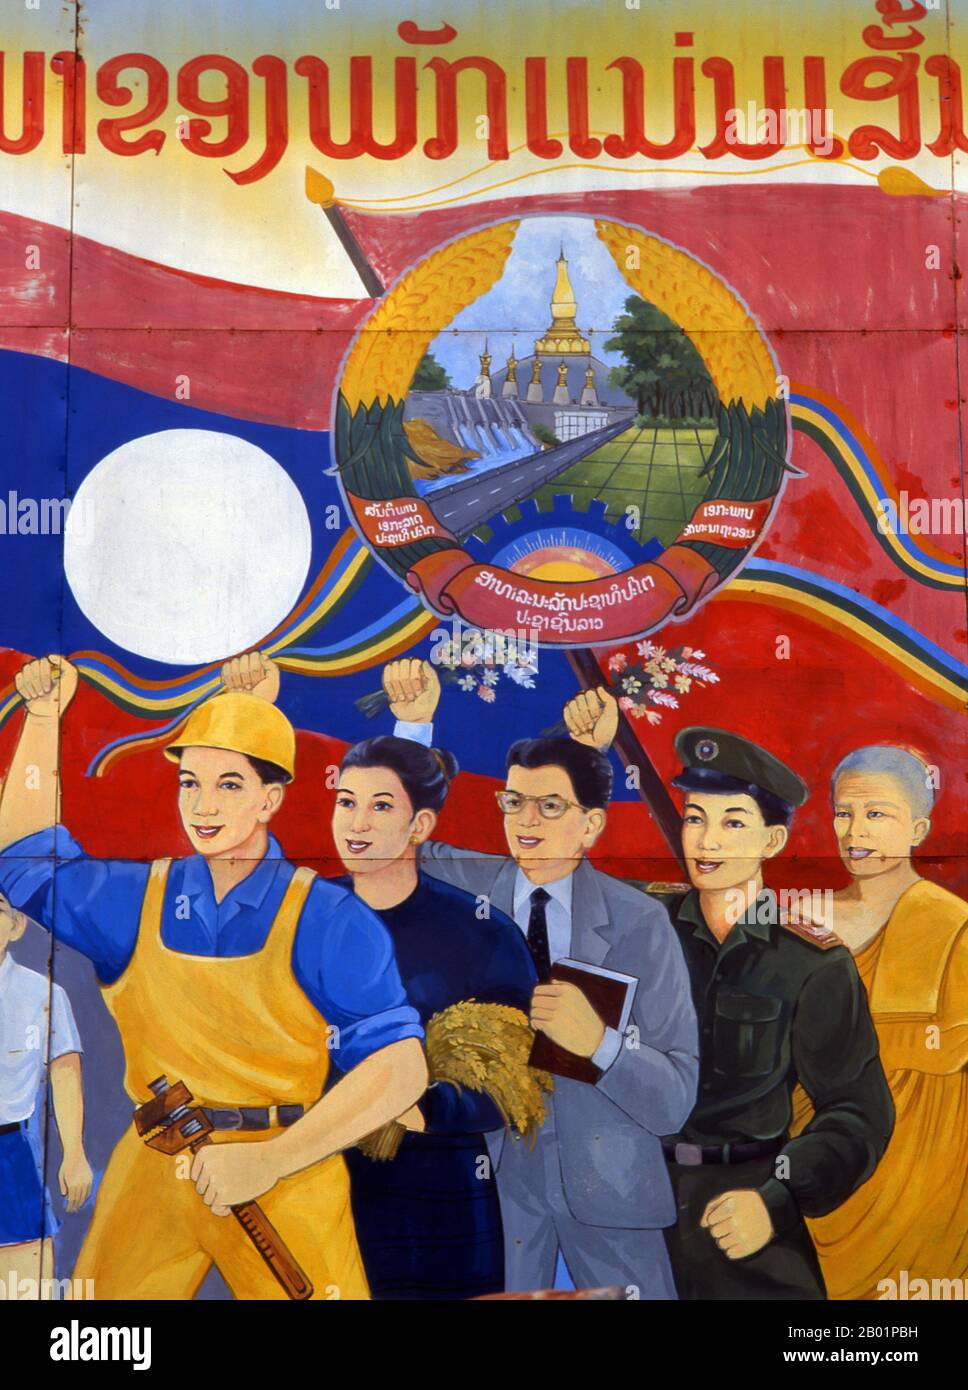 Laos: Politisches Plakat im Stil des revolutionären Sozialistischen Realismus auf den Straßen von Vientiane. Sozialistischer Realismus ist ein Stil realistischer Kunst, der in der Sowjetunion entwickelt wurde und in anderen kommunistischen Ländern zu einem dominanten Stil wurde. Der sozialistische Realismus ist ein teleologisch orientierter Stil, der die Ziele des Sozialismus und Kommunismus fördern soll. Obwohl verwandt, sollte sie nicht mit dem sozialen Realismus verwechselt werden, einer Art Kunst, die Themen von sozialem Interesse realistisch darstellt. Im Gegensatz zum sozialen Realismus verherrlicht der sozialistische Realismus oft die Rolle der Armen. Stockfoto